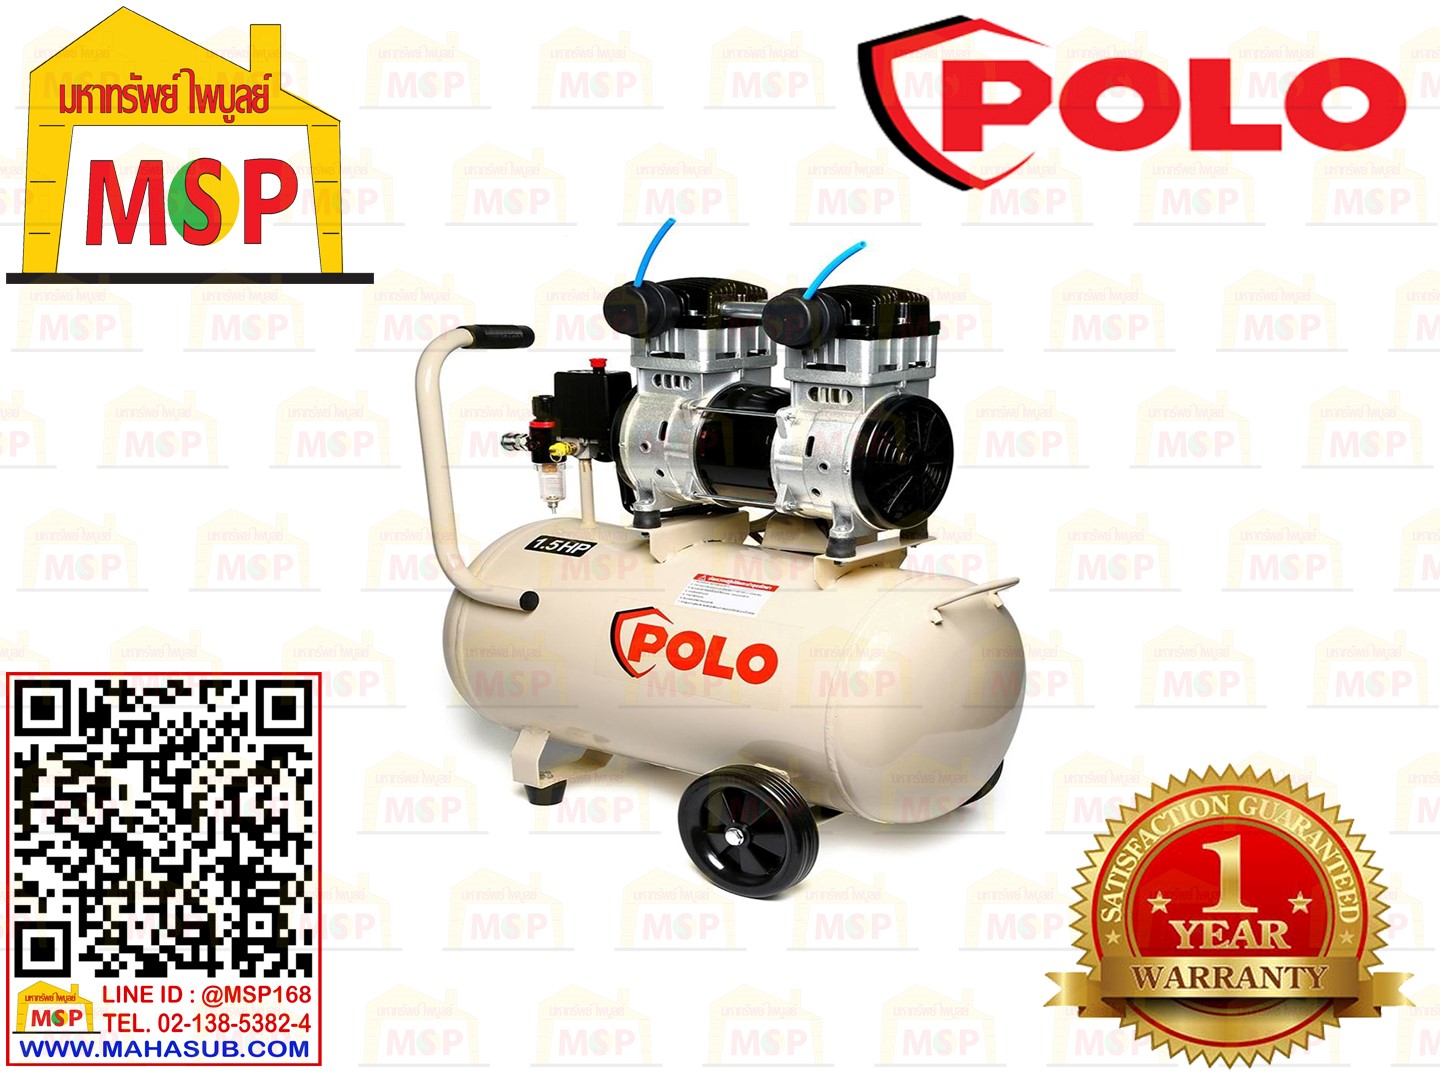 Polo ปั๊มลมออยล์ฟรี OFS-11001-50  50L  1100W